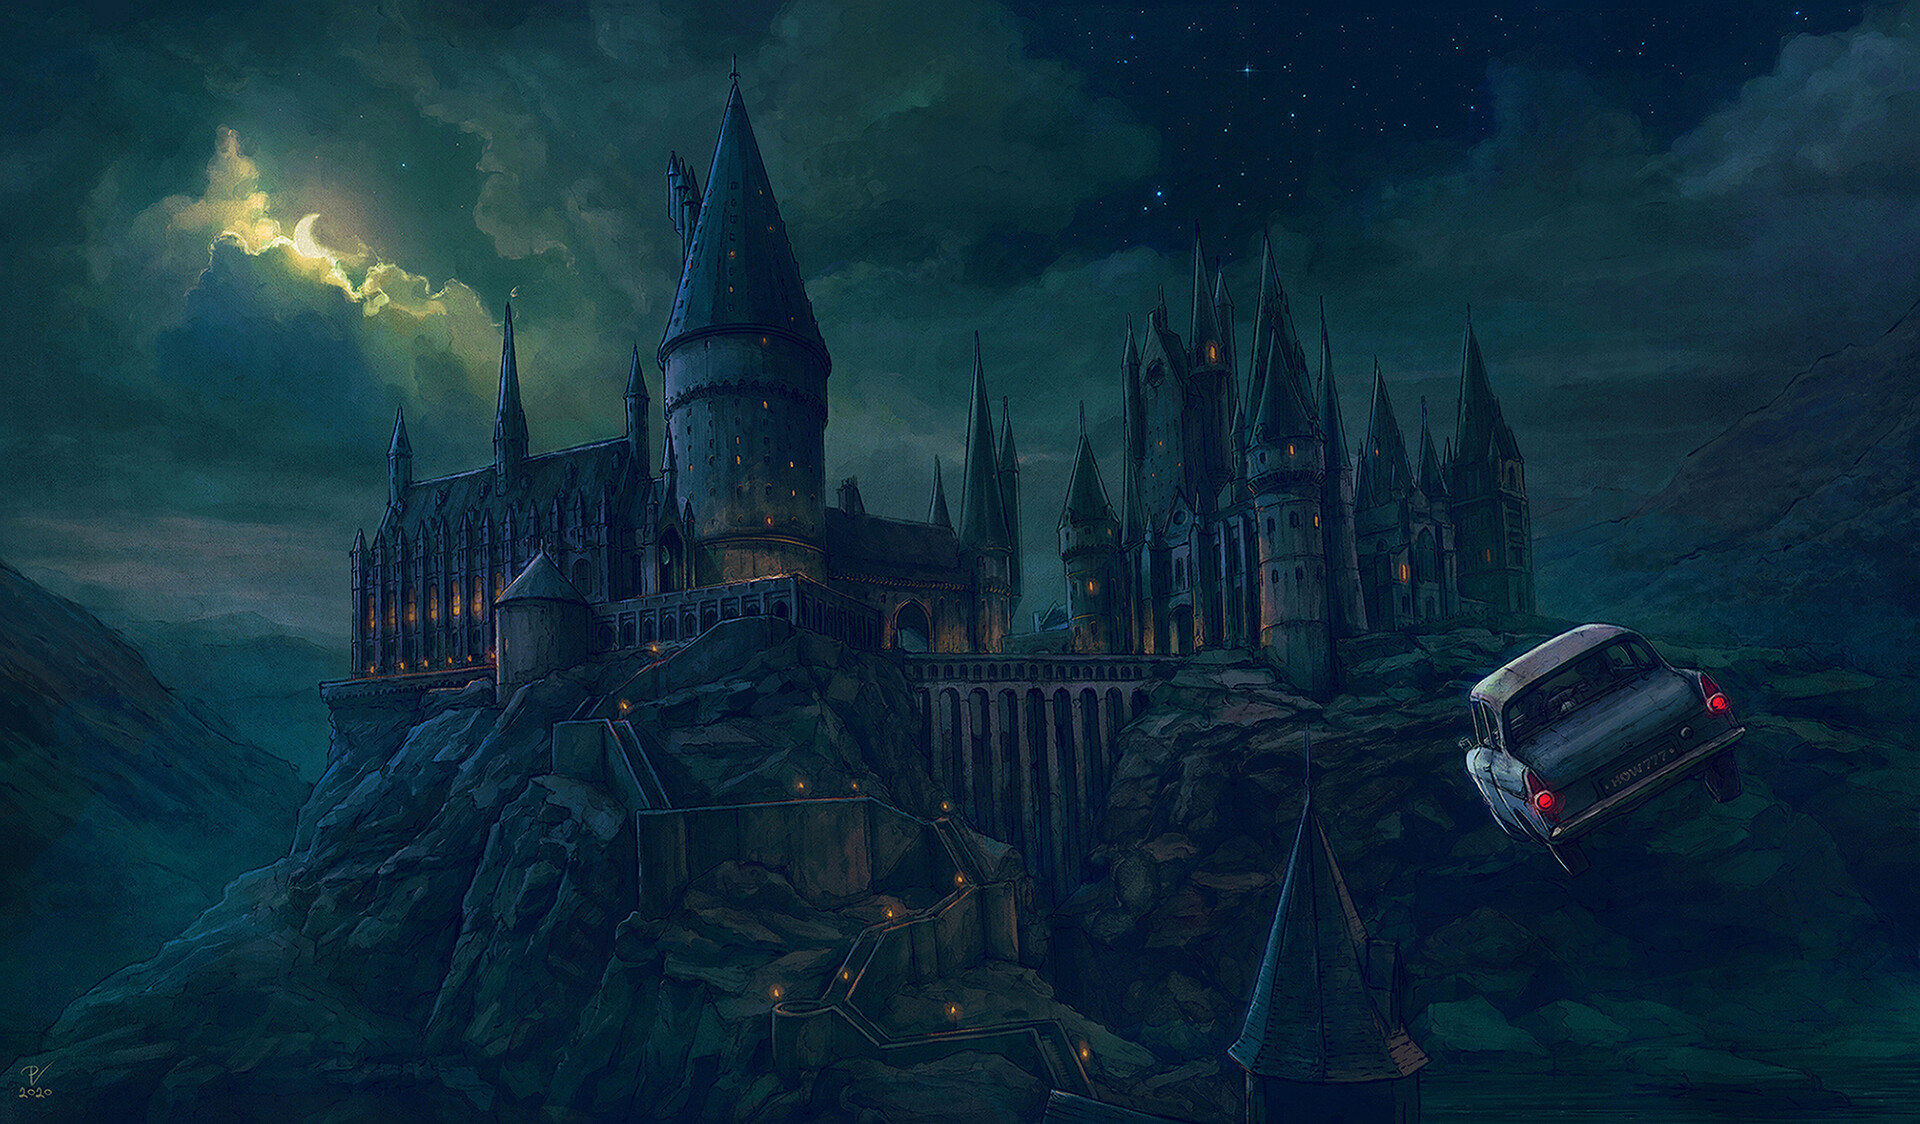 hogwarts legacy dark arts